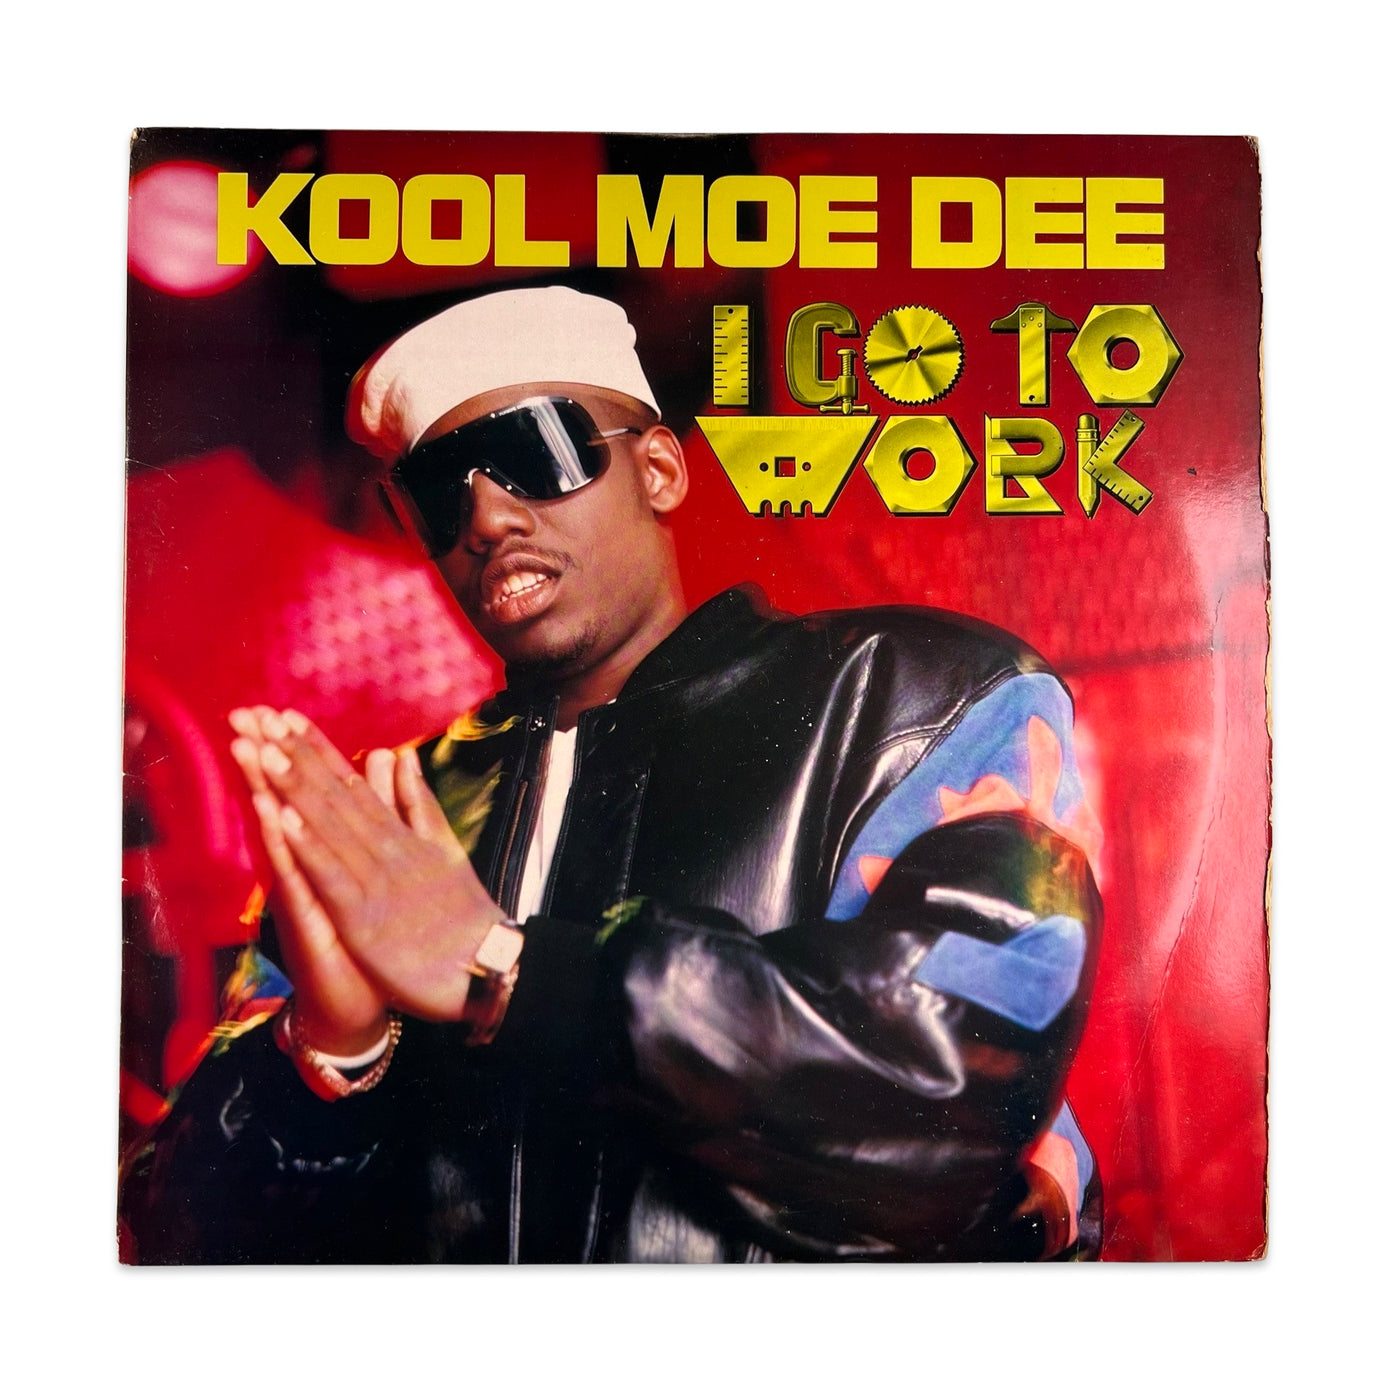 Kool Moe Dee – I Go To Work